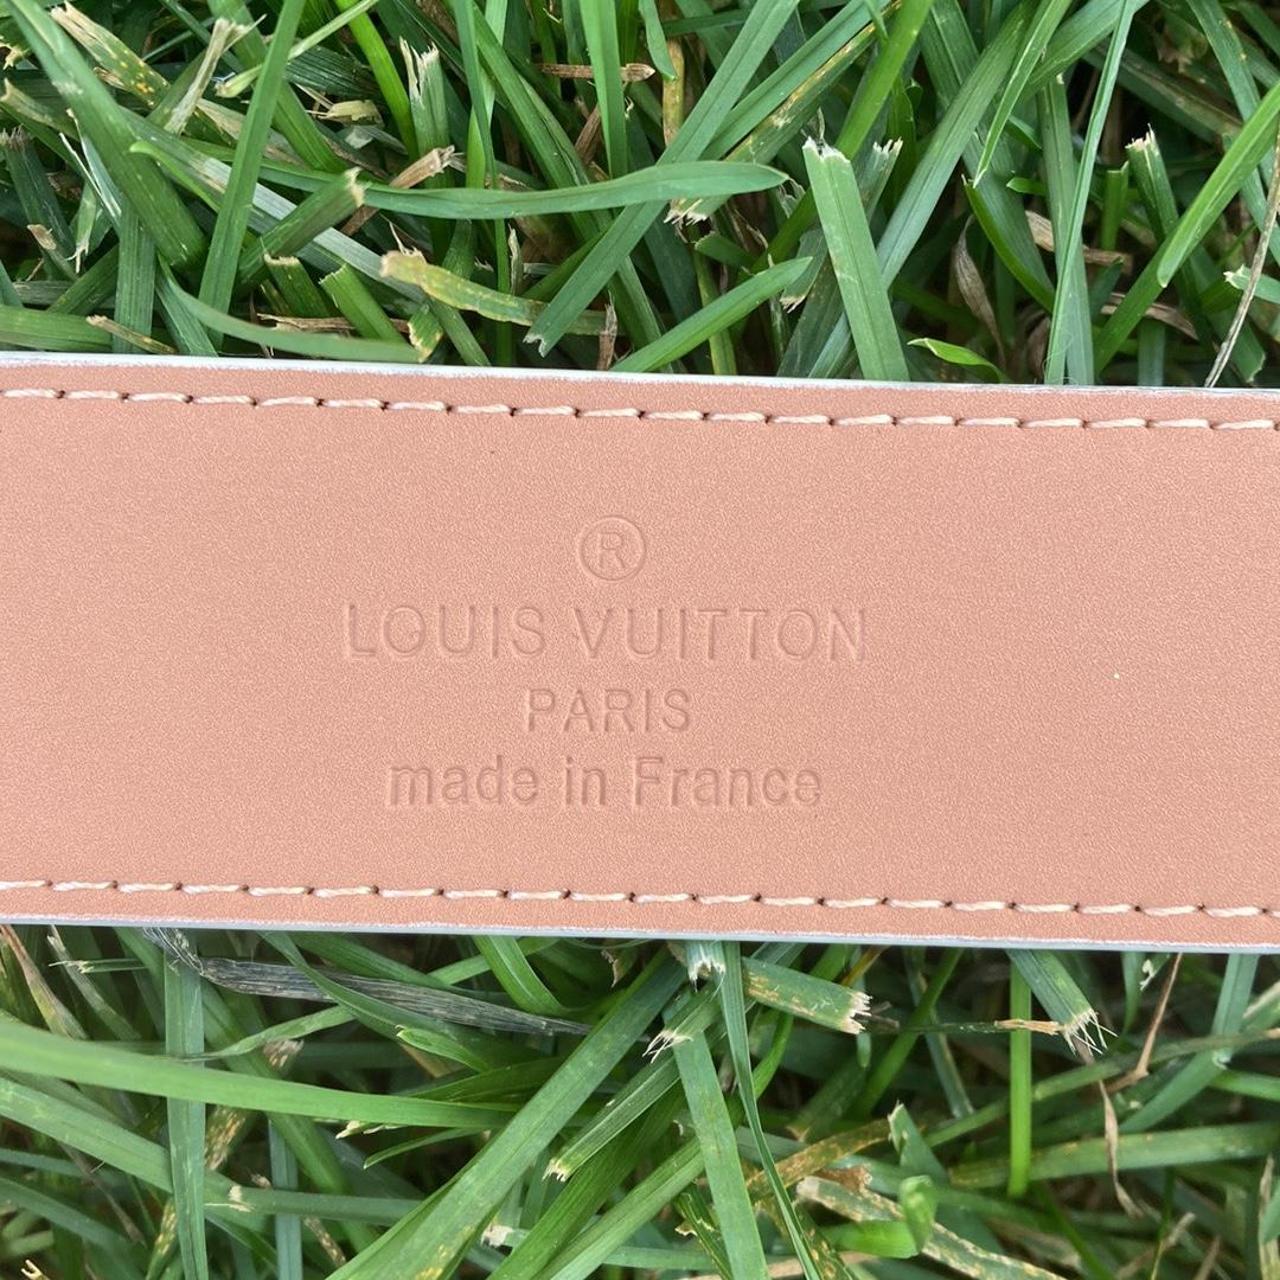 Brand new Louis Vuitton cloud Belt! Very rare - Depop